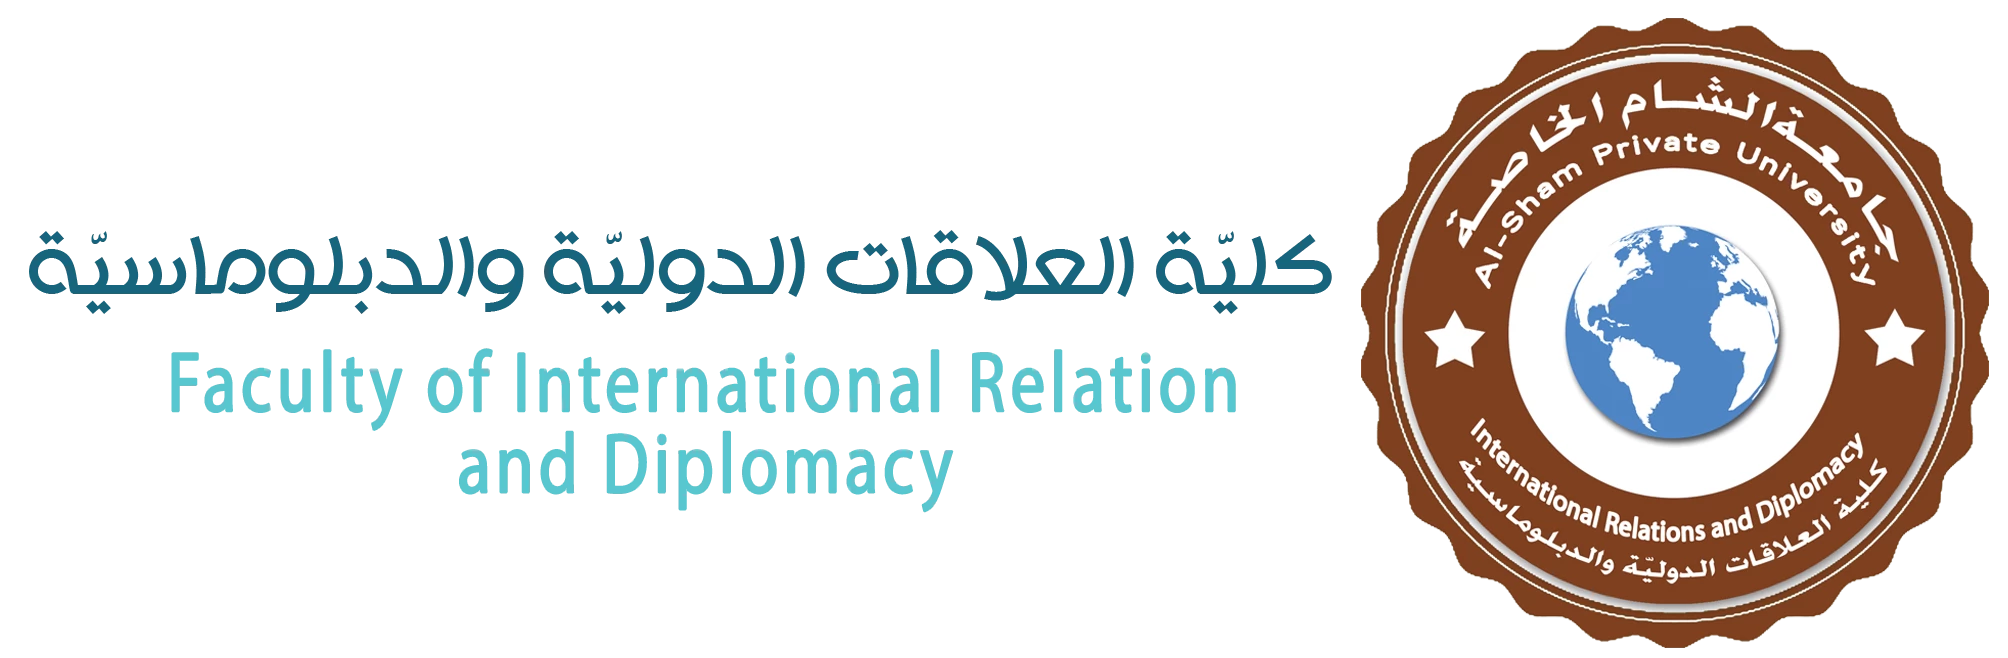 كلية العلاقات الدولية والدبلوماسية